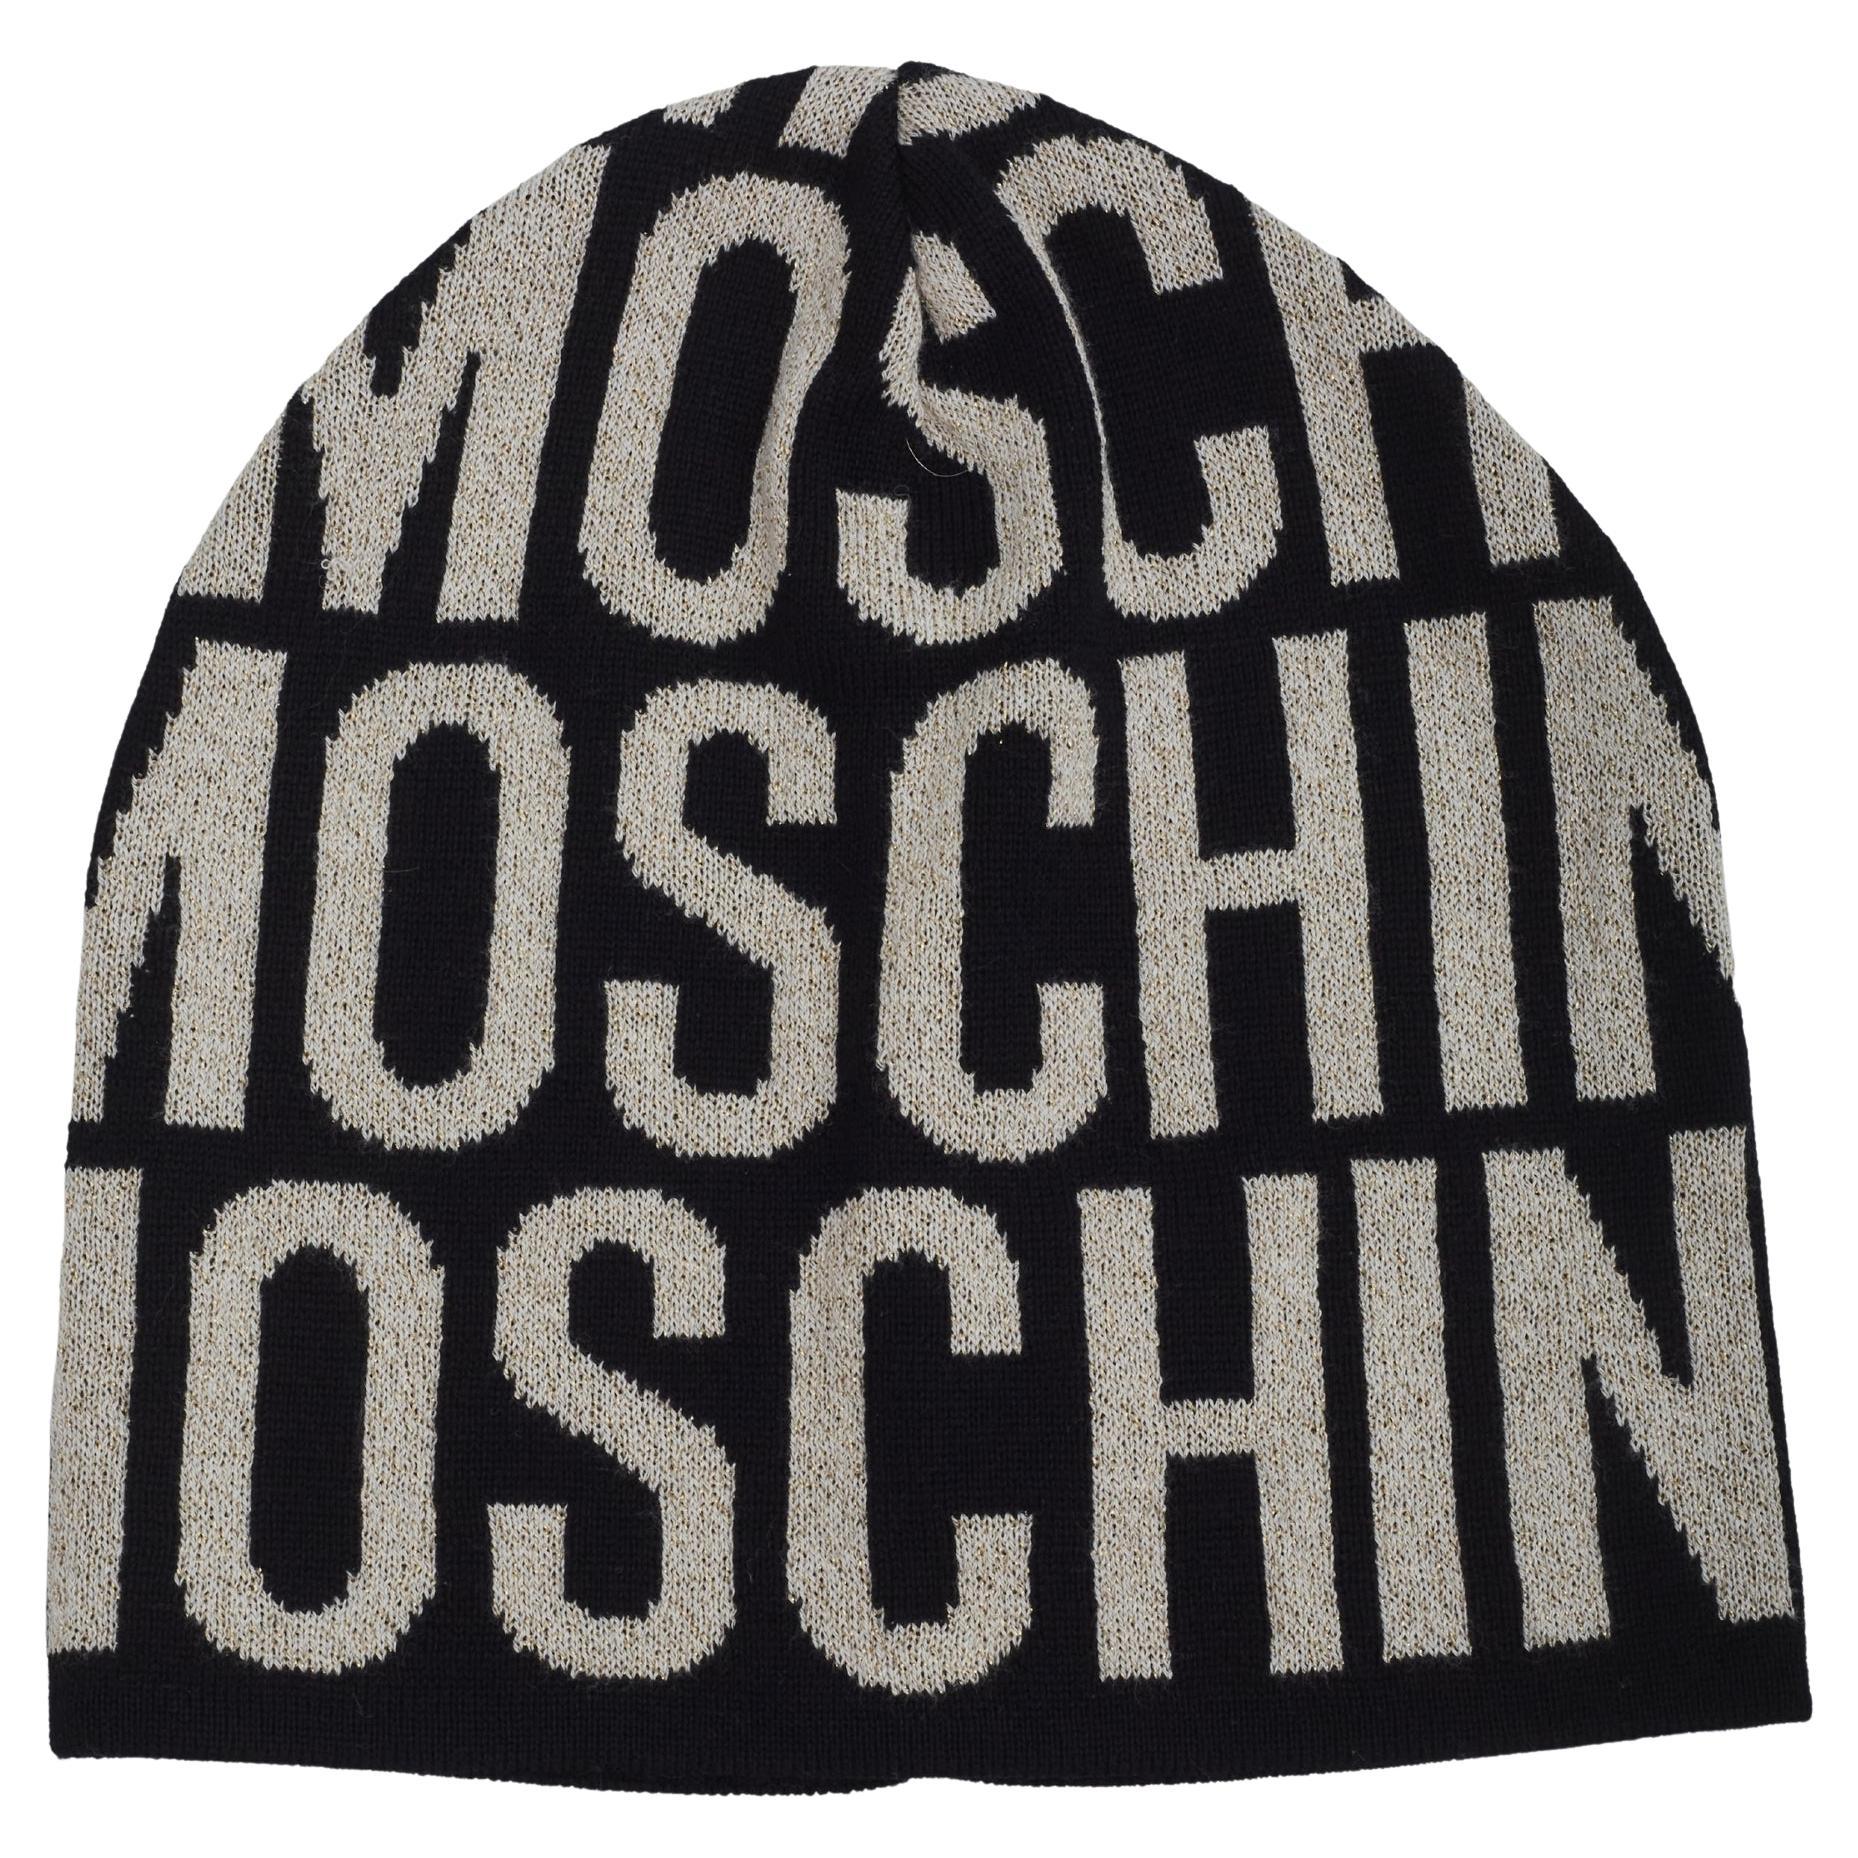 Moschino Logo Weißer und schwarzer Beanie